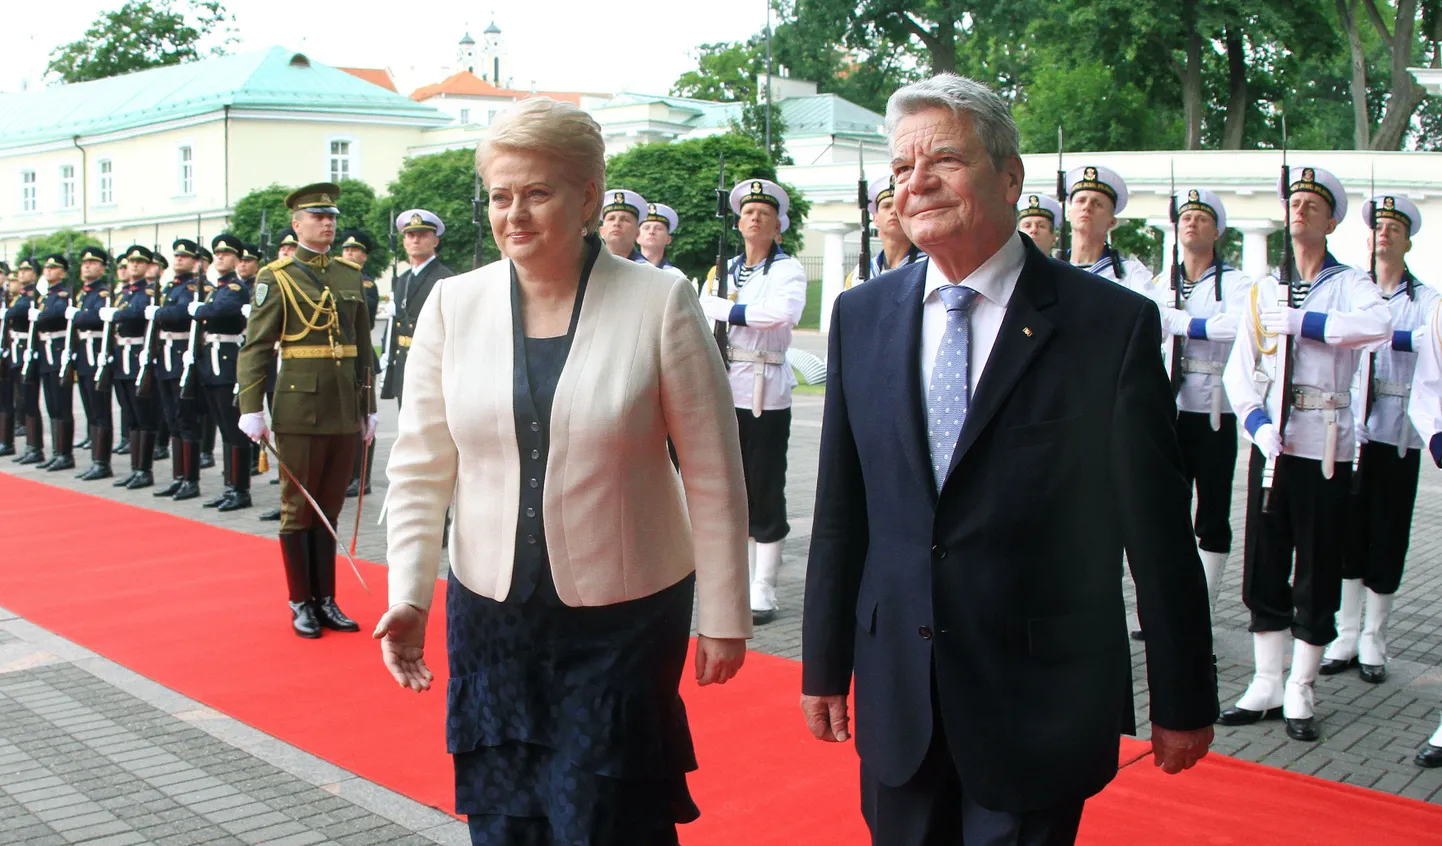 Leedu president Dalia Grybauskaitė (vasakul) ja tema Saksa kolleeg Joachim Gauck